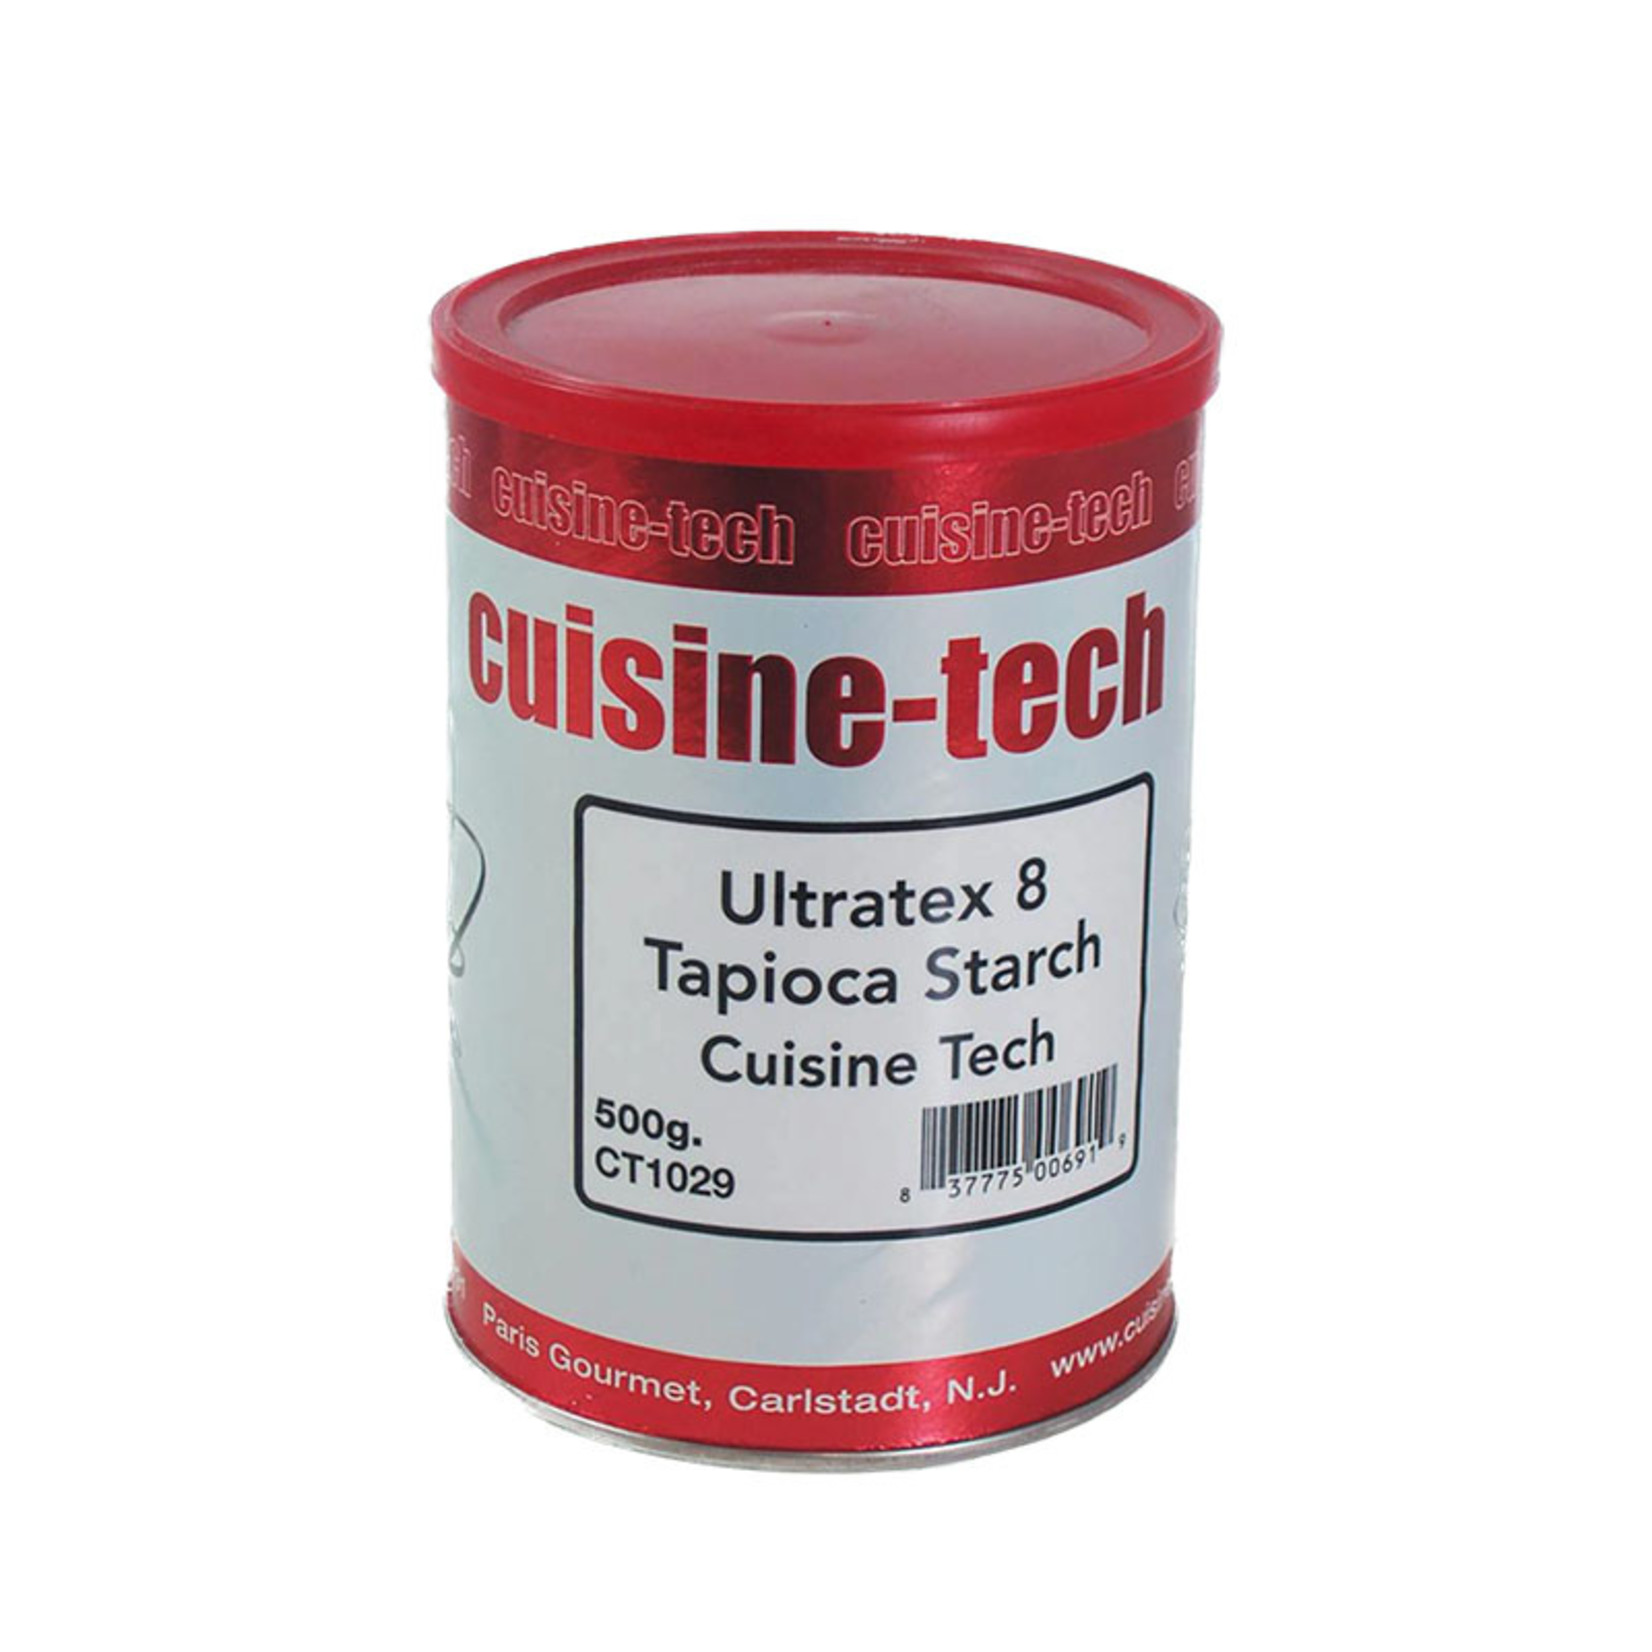 Cuisine Tech Cuisine Tech - Tapioca Starch Ultratex 8 - 1 lb